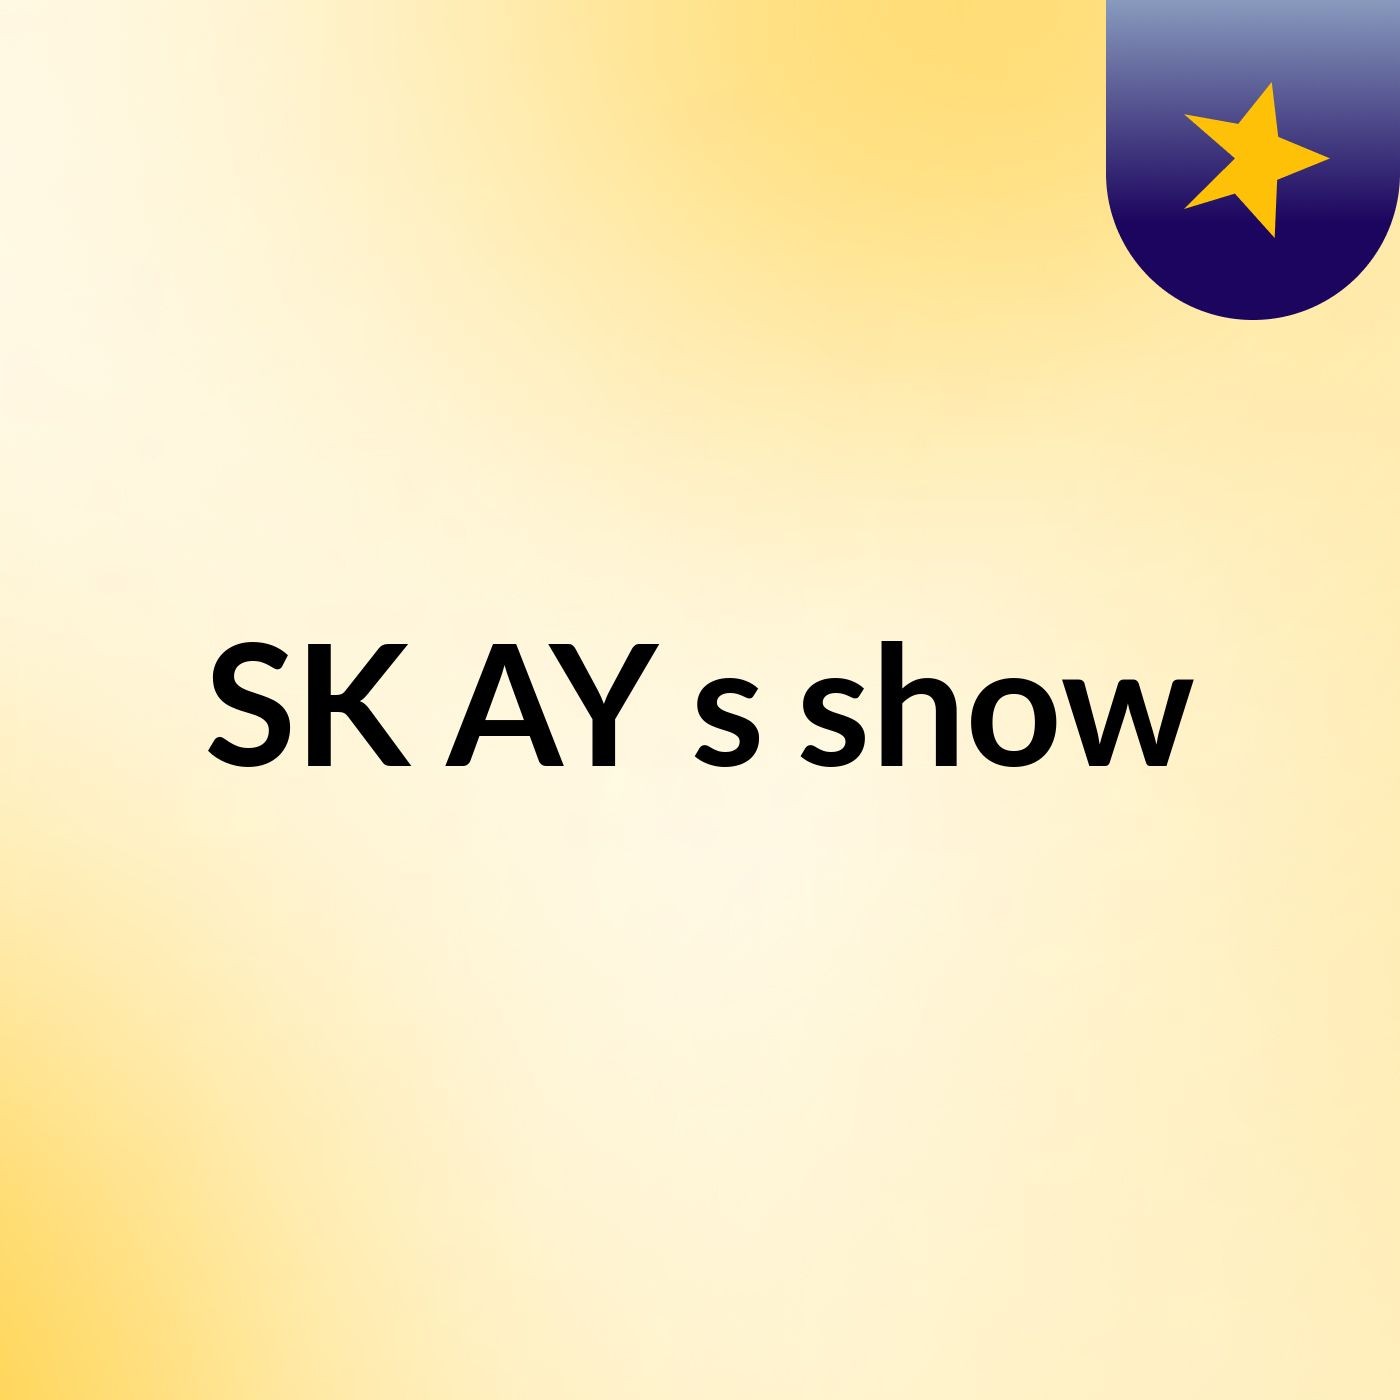 SK AY's show